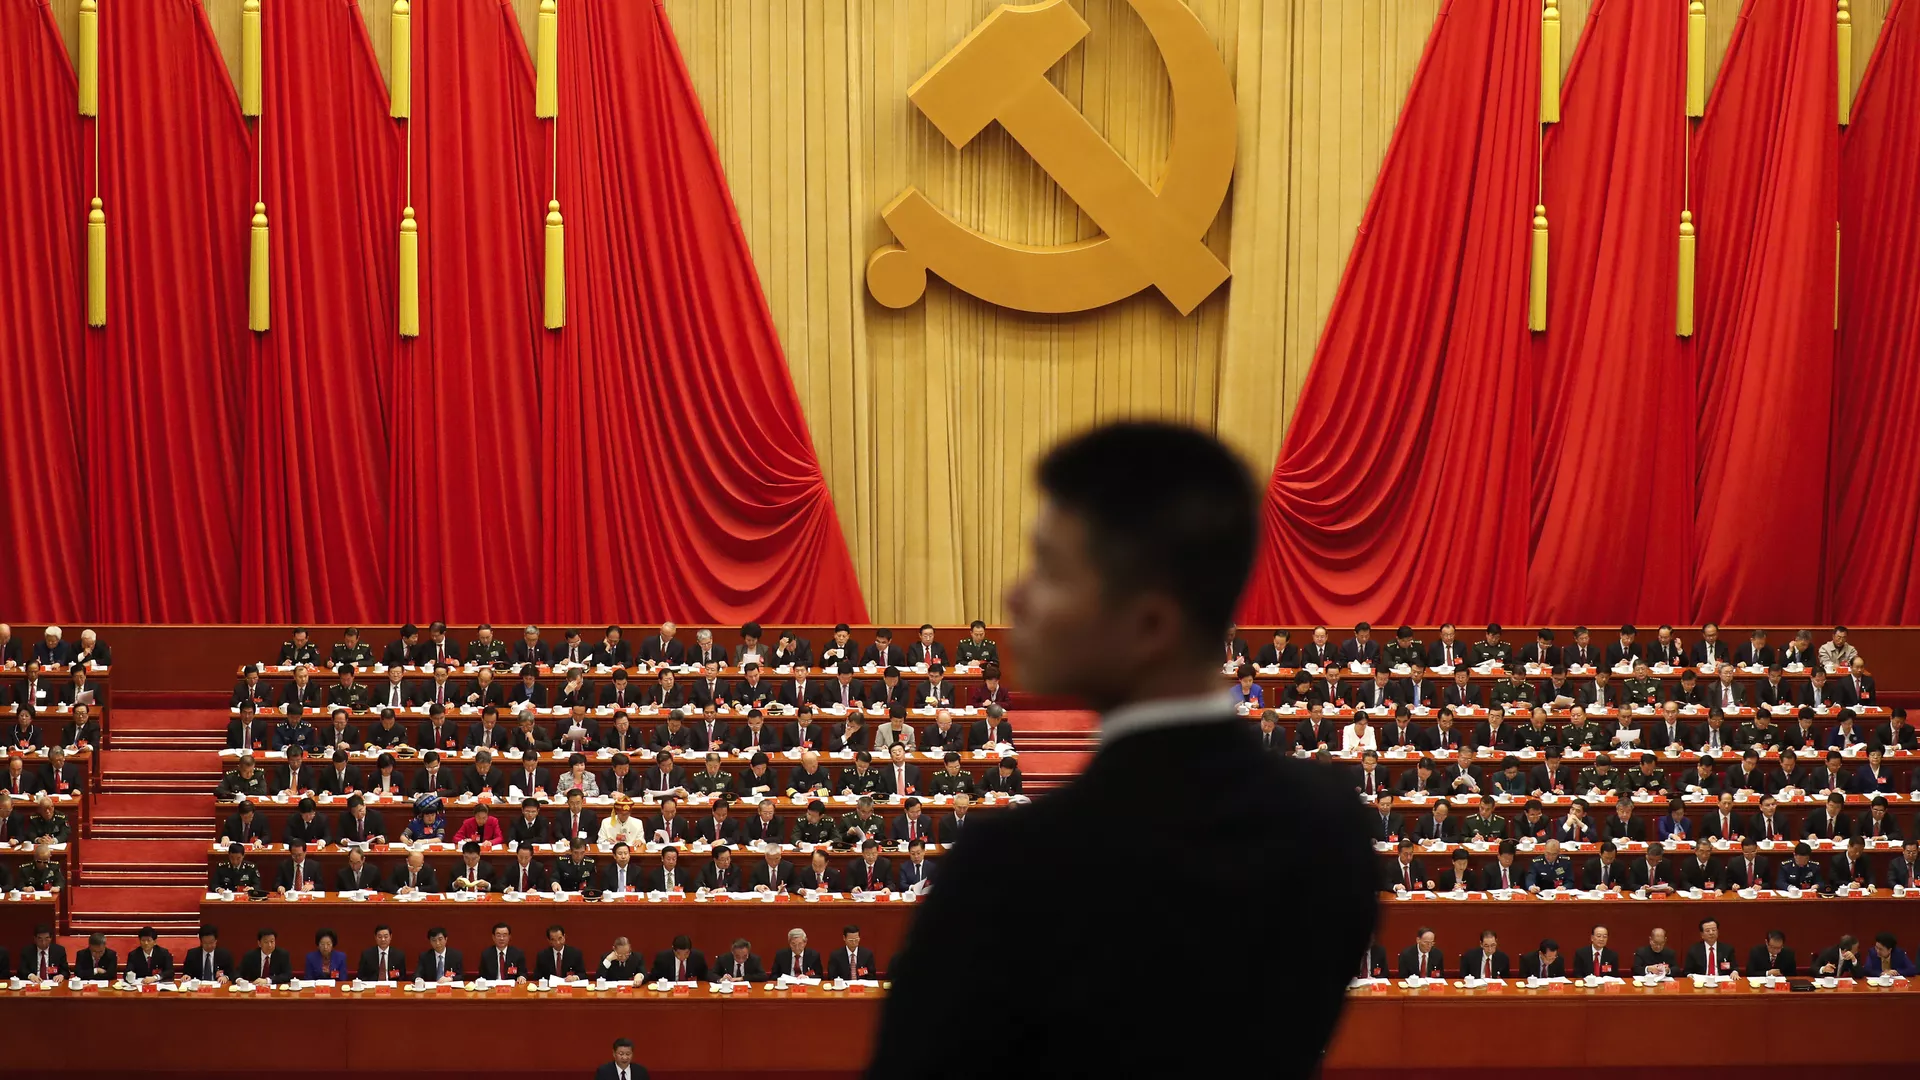 Војник стоји током говора кинеског председника Си Ђинпинга на церемонији отварања 19. конгреса Комунистичке партије у Пекингу - Sputnik Србија, 1920, 21.02.2023